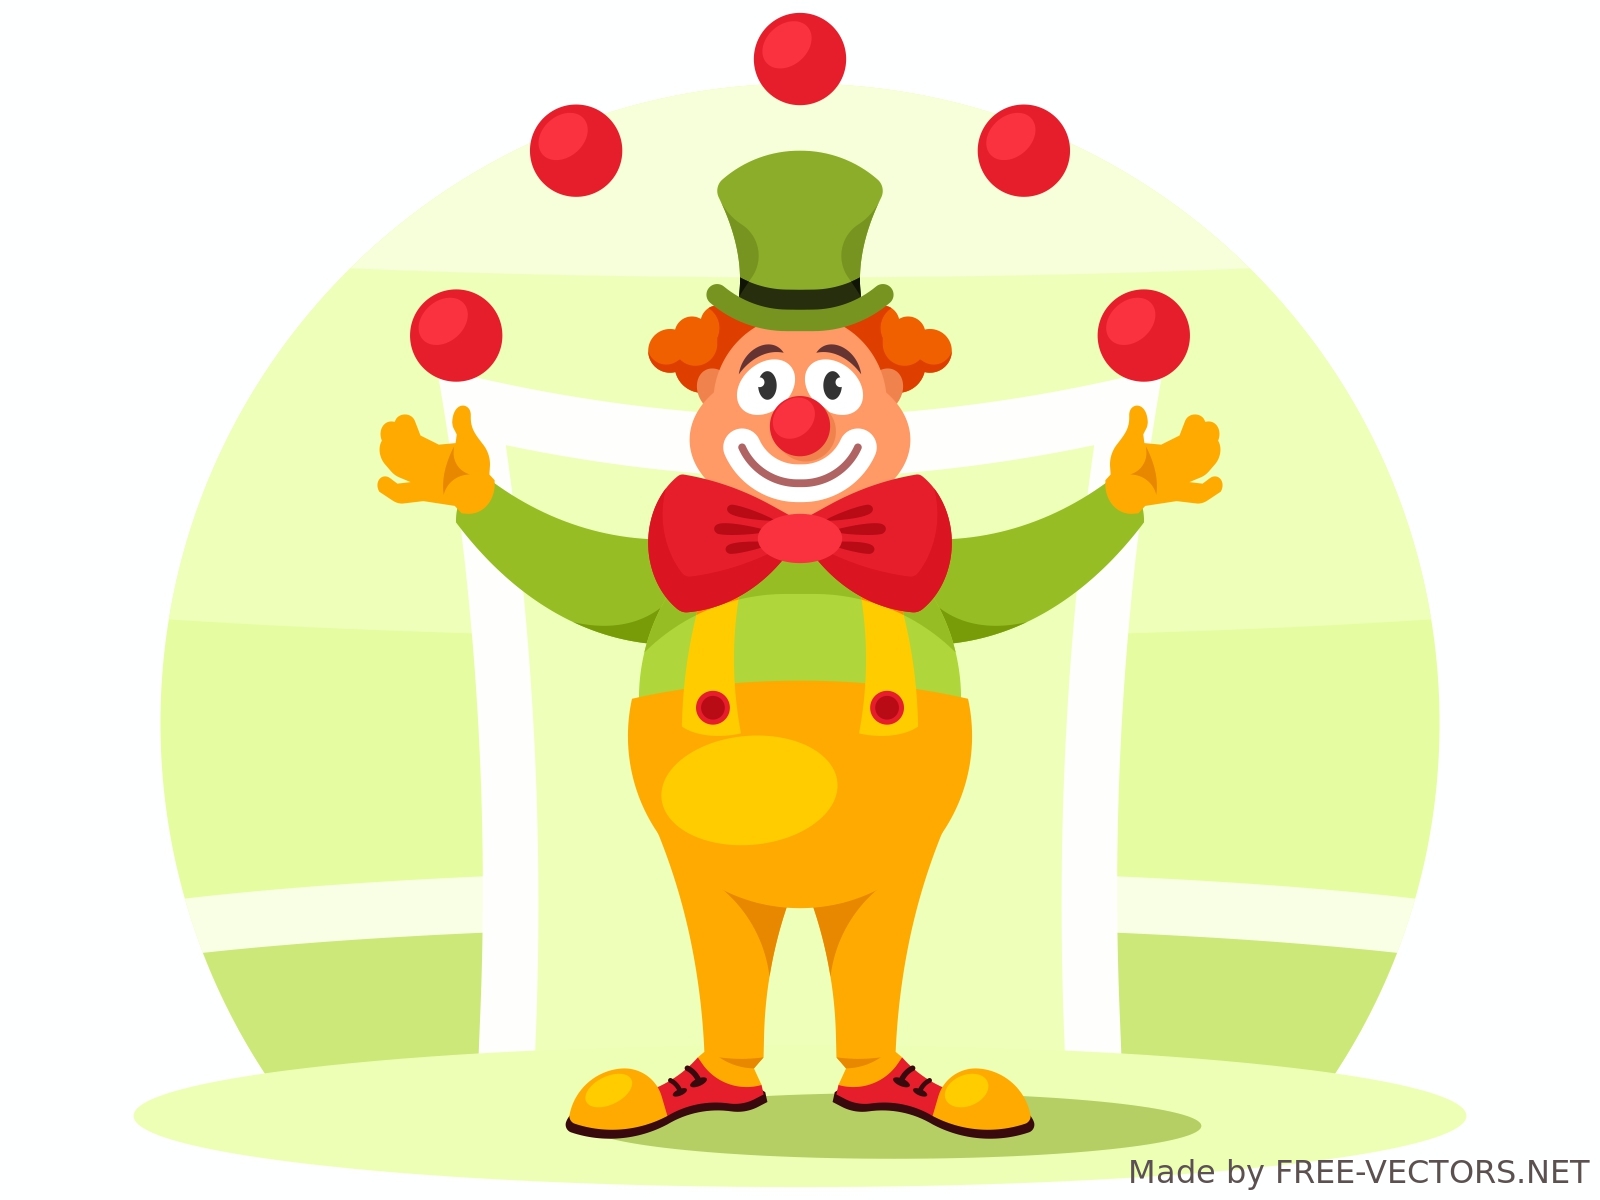 Circus clown vector